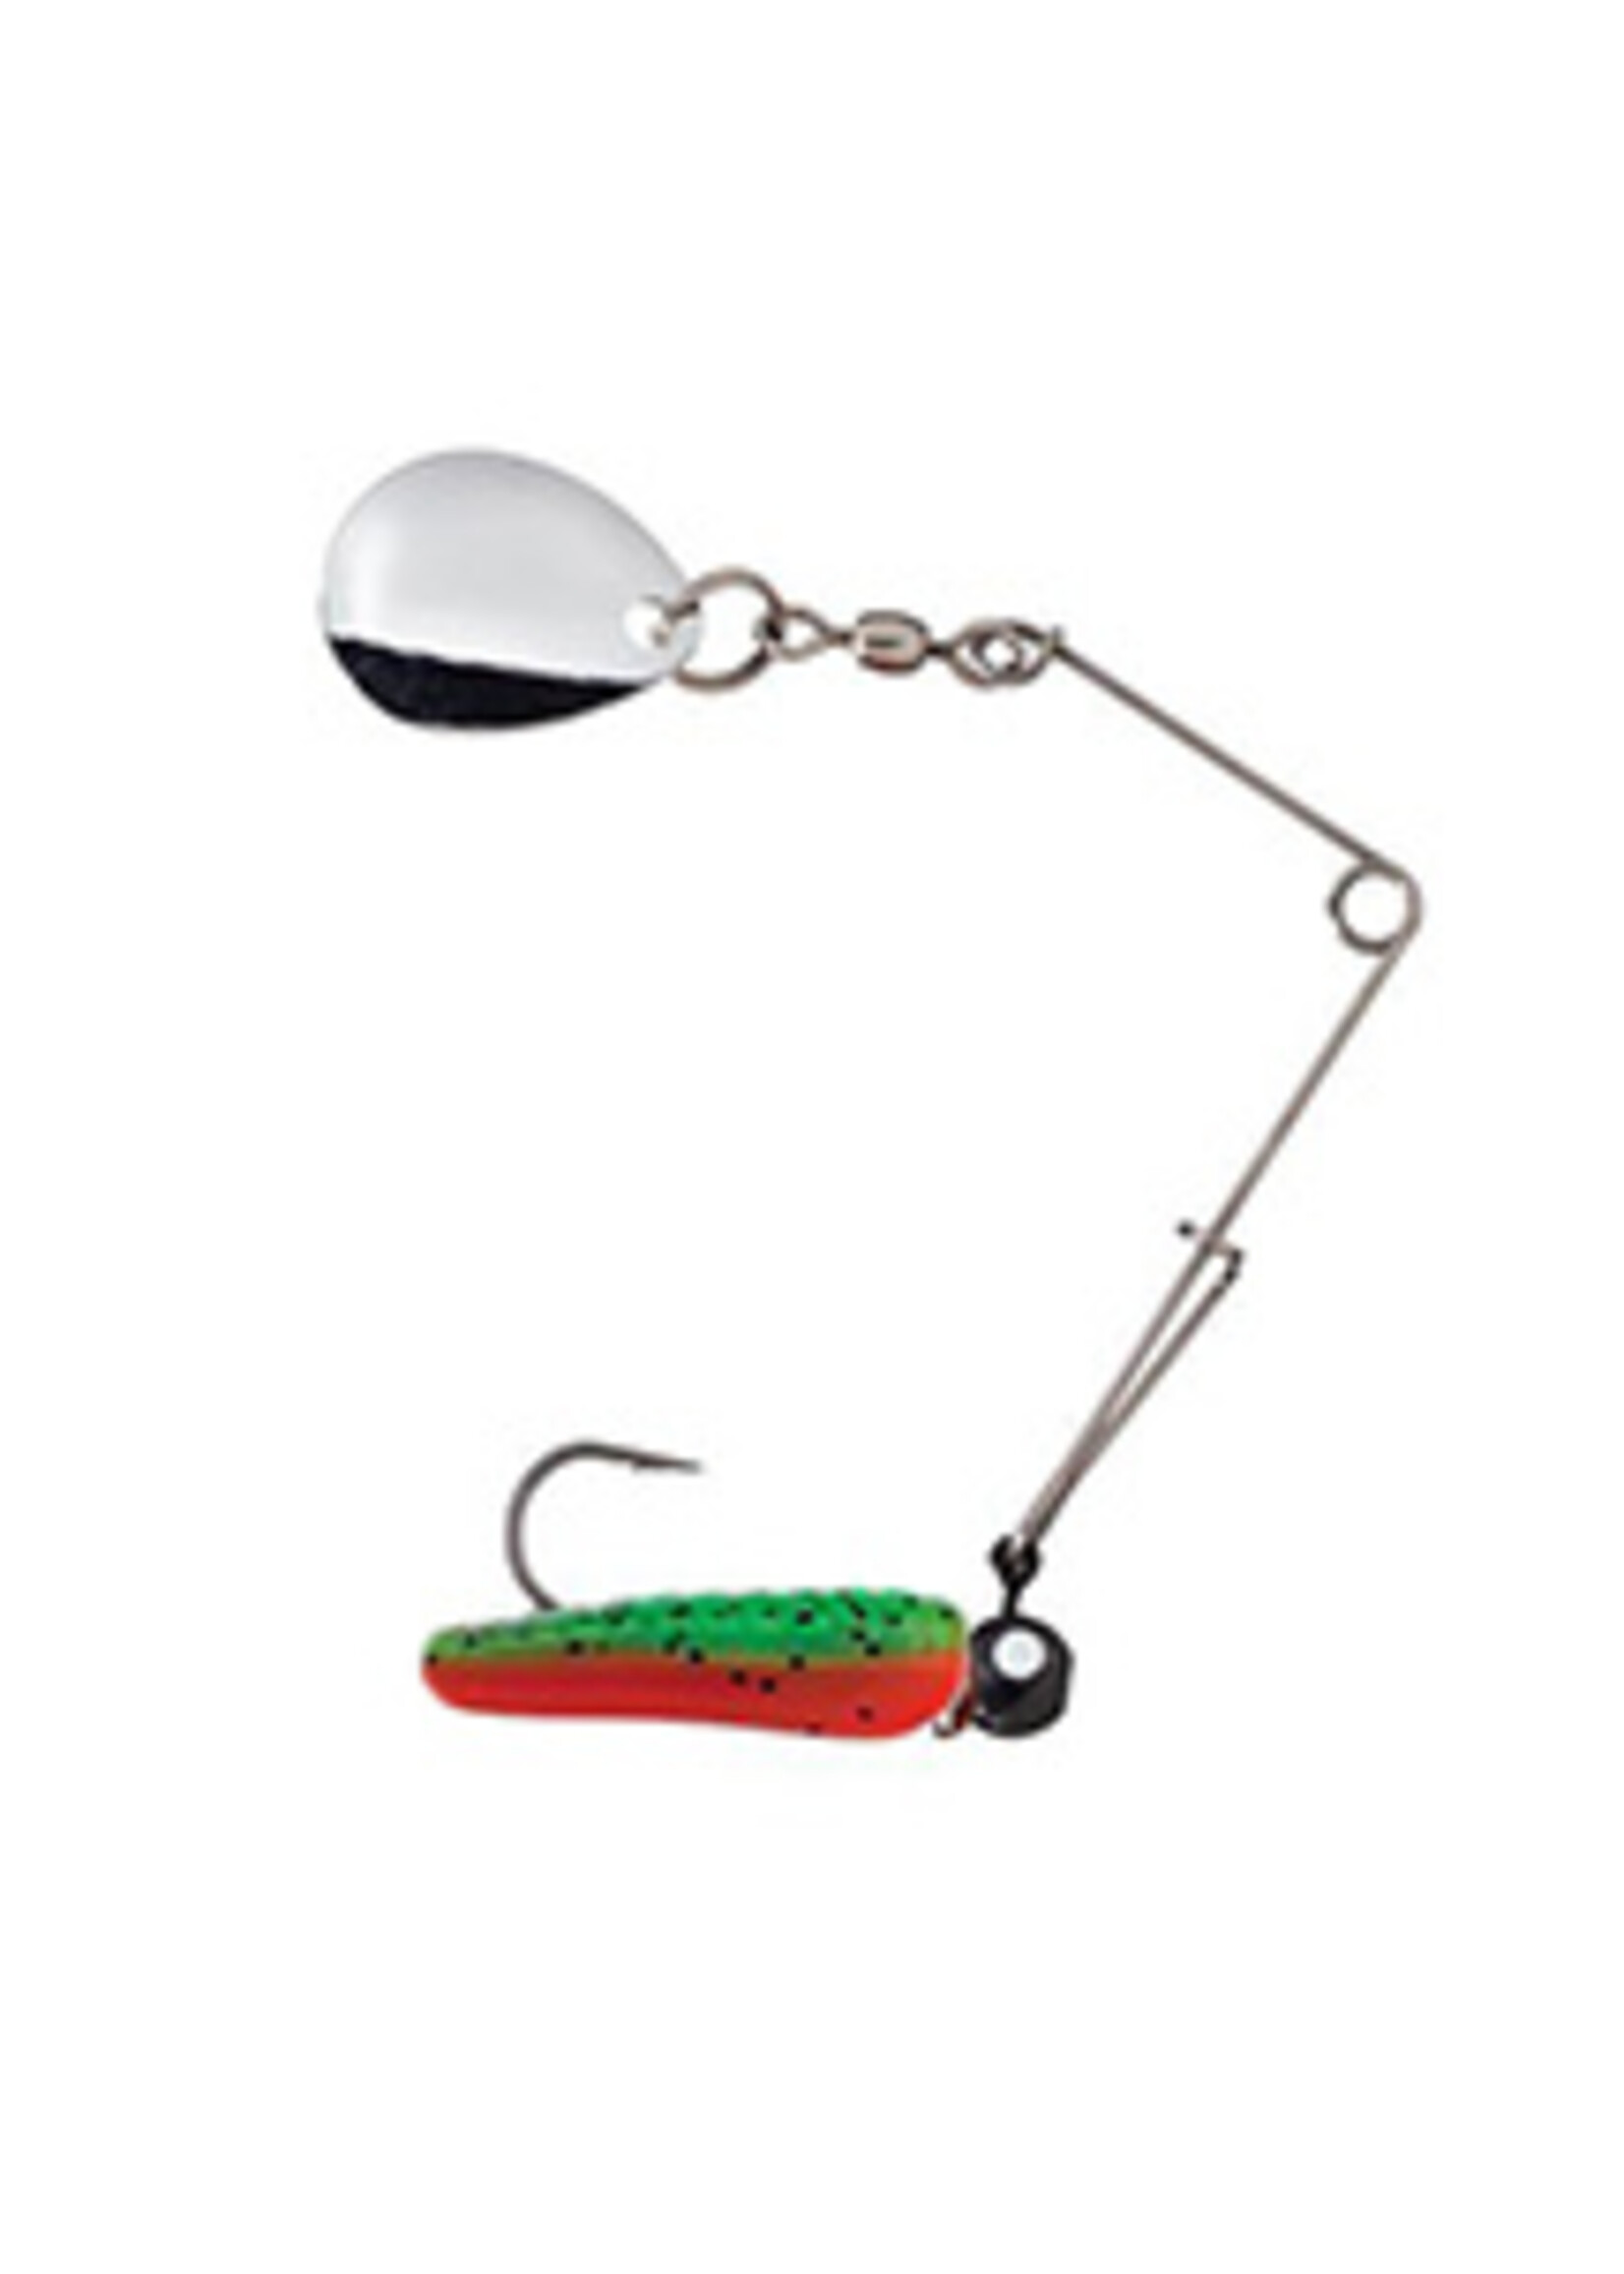 Johnson Fishing Beetle Spin® Panfish Buster™ Fishing Lure Set